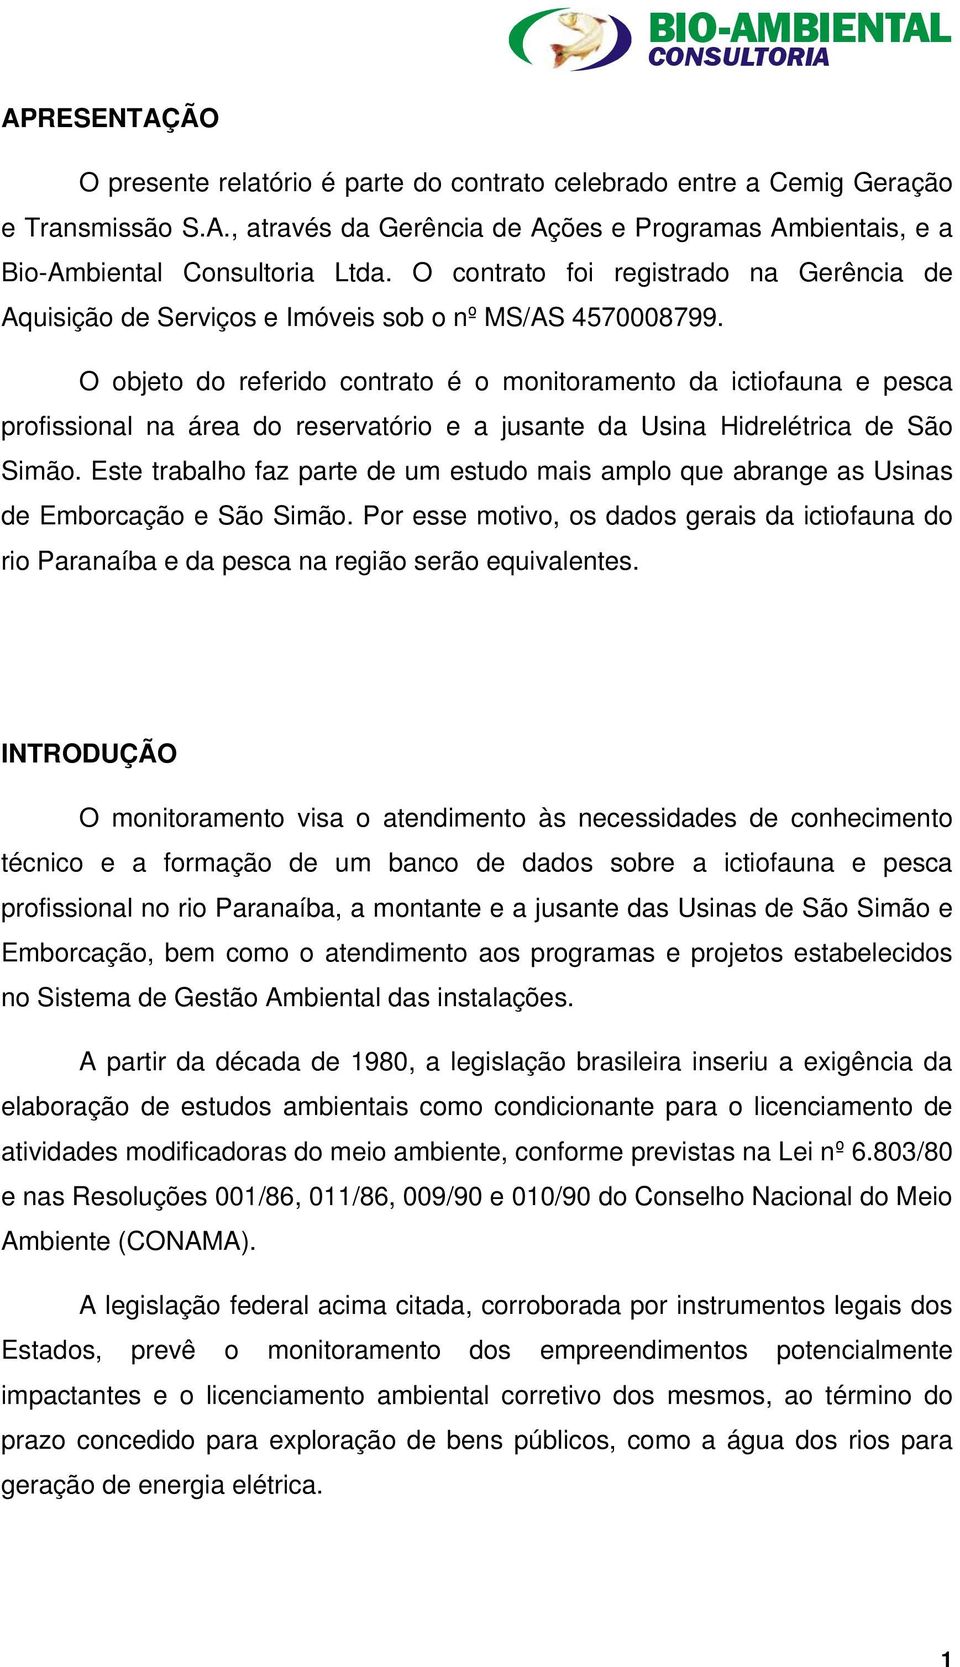 O objeto do referido contrato é o monitoramento da ictiofauna e pesca profissional na área do reservatório e a jusante da Usina Hidrelétrica de São Simão.